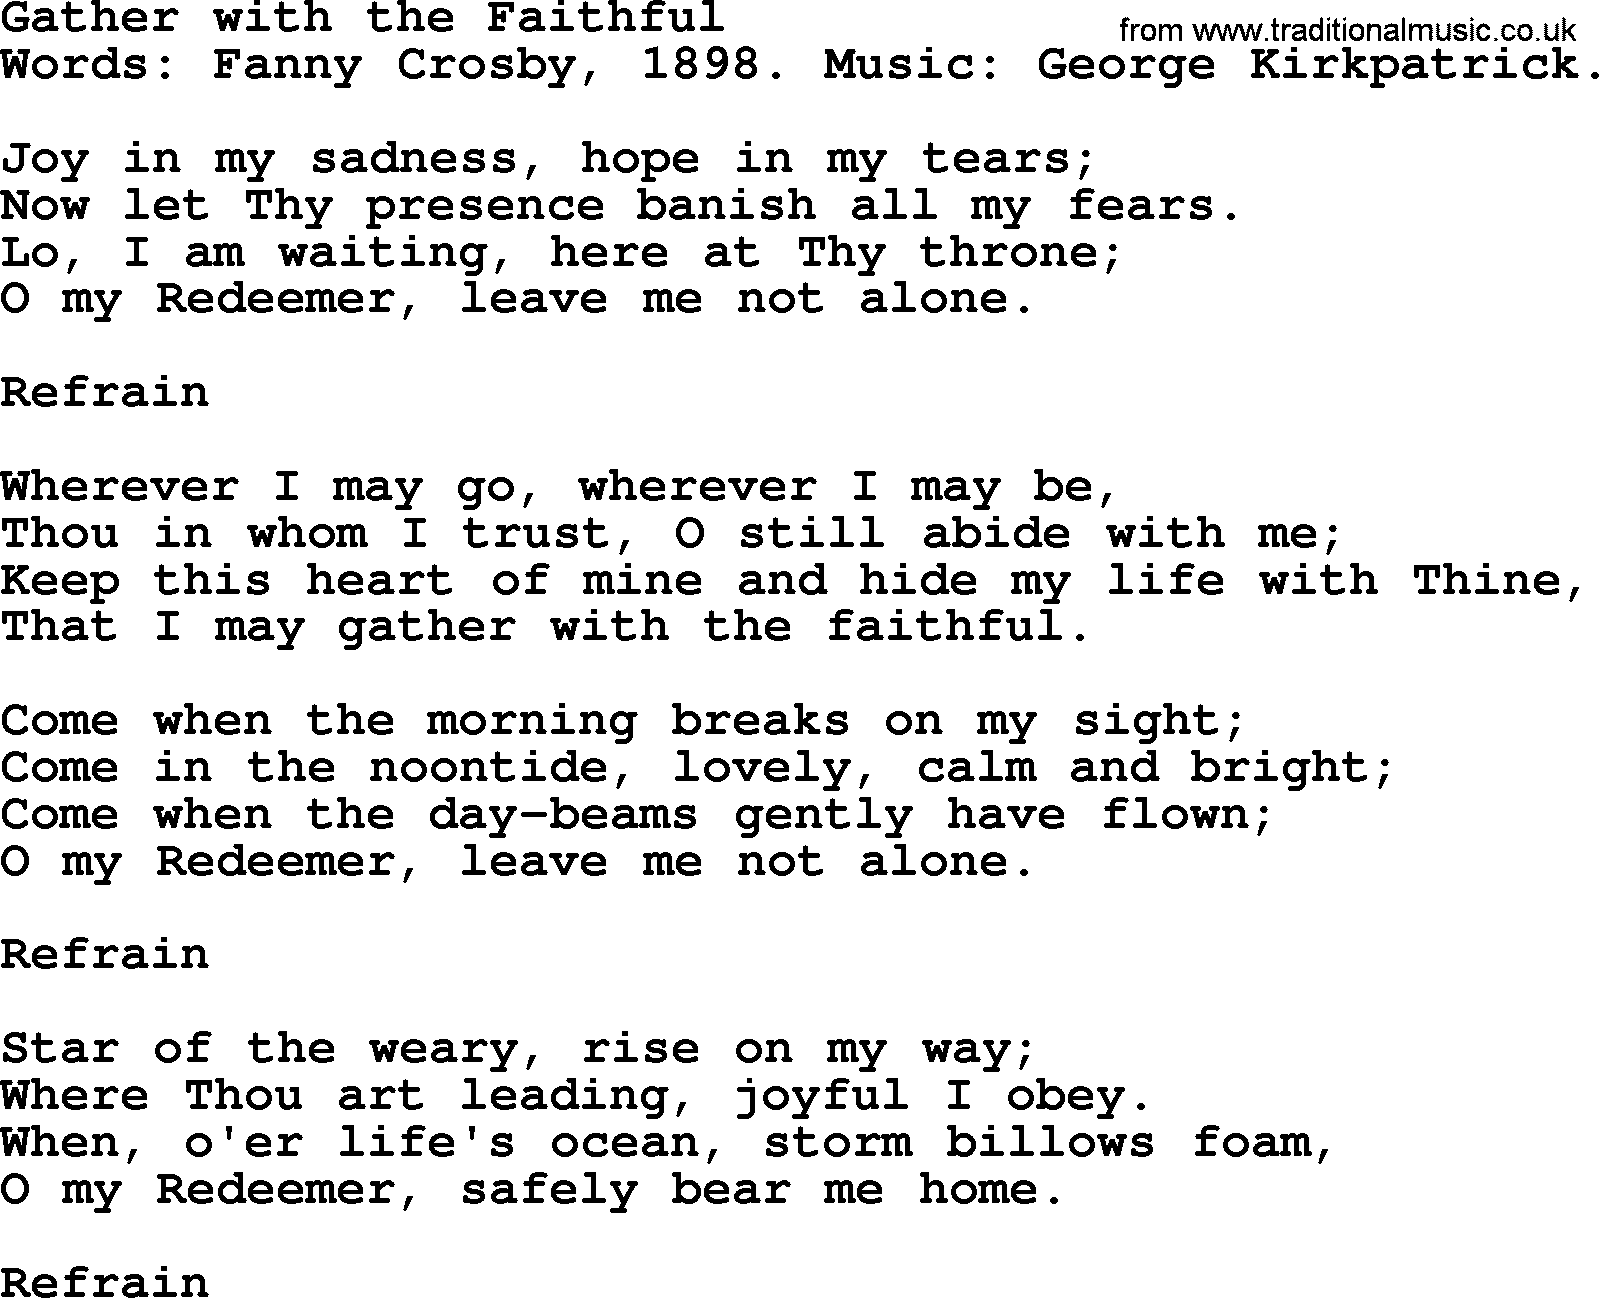 Fanny Crosby song: Gather With The Faithful, lyrics